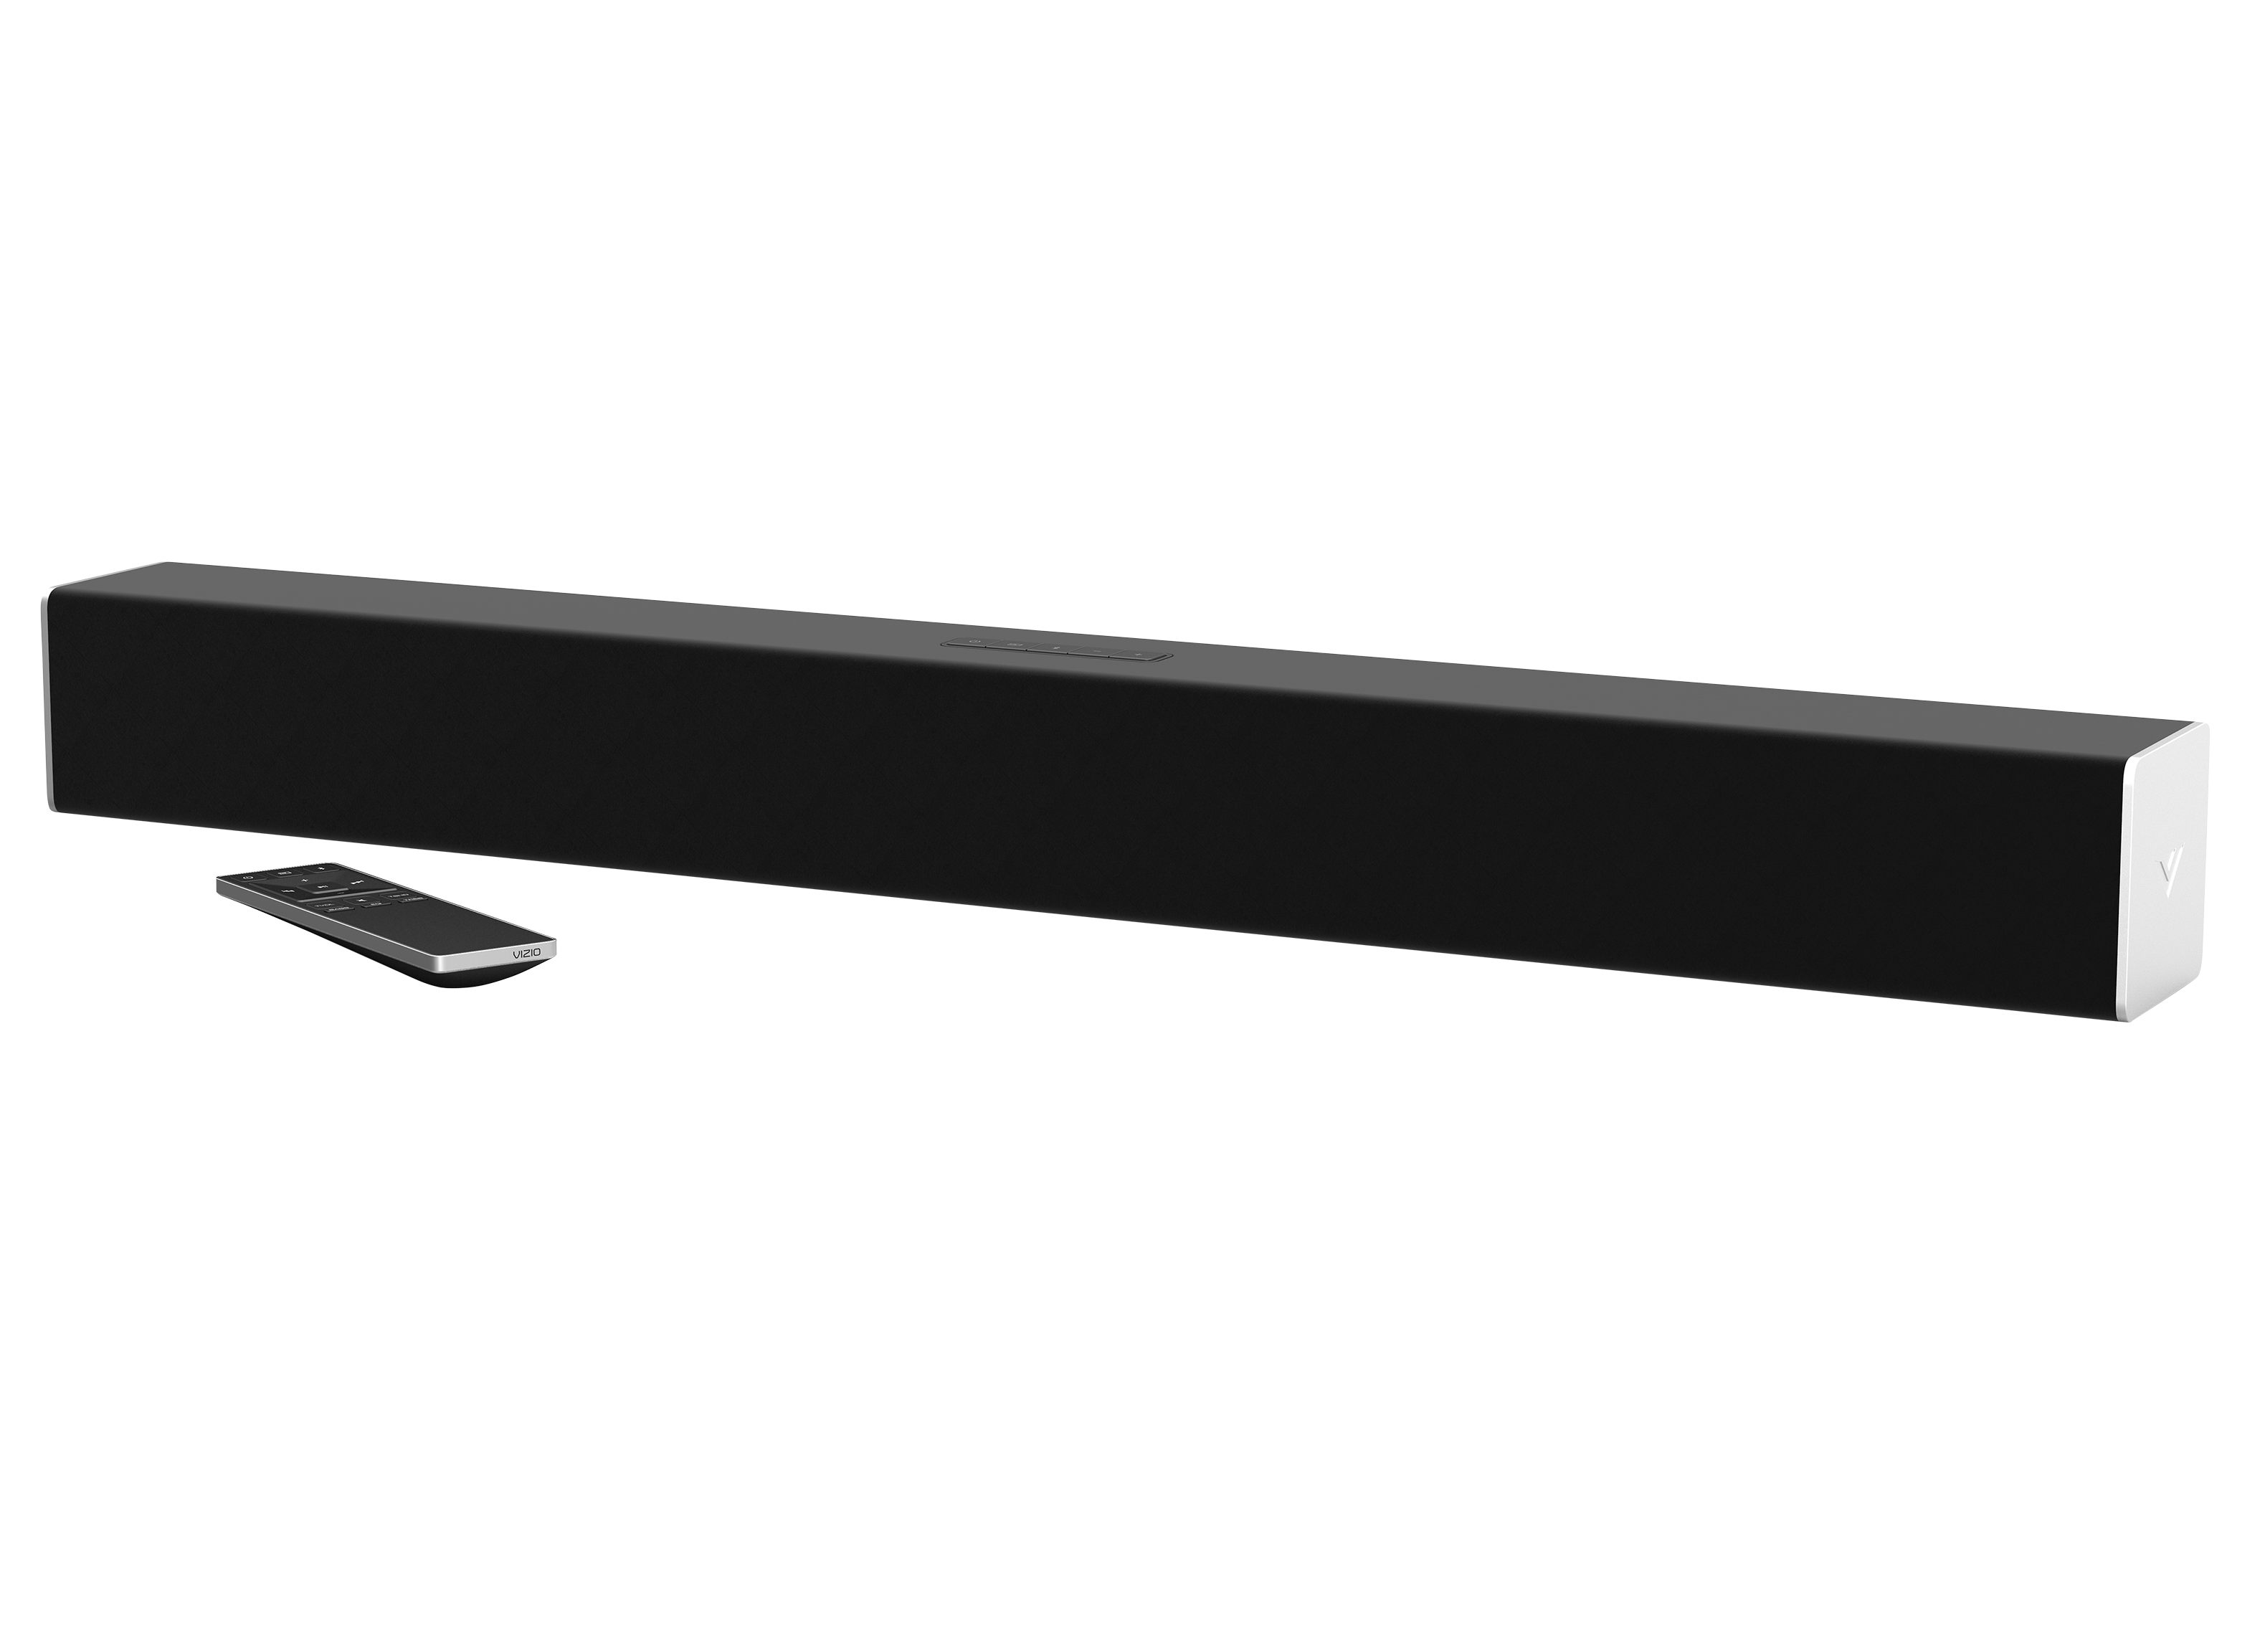 2017 Model Black VIZIO SB2820n-E0 Sound bar Home Speaker 